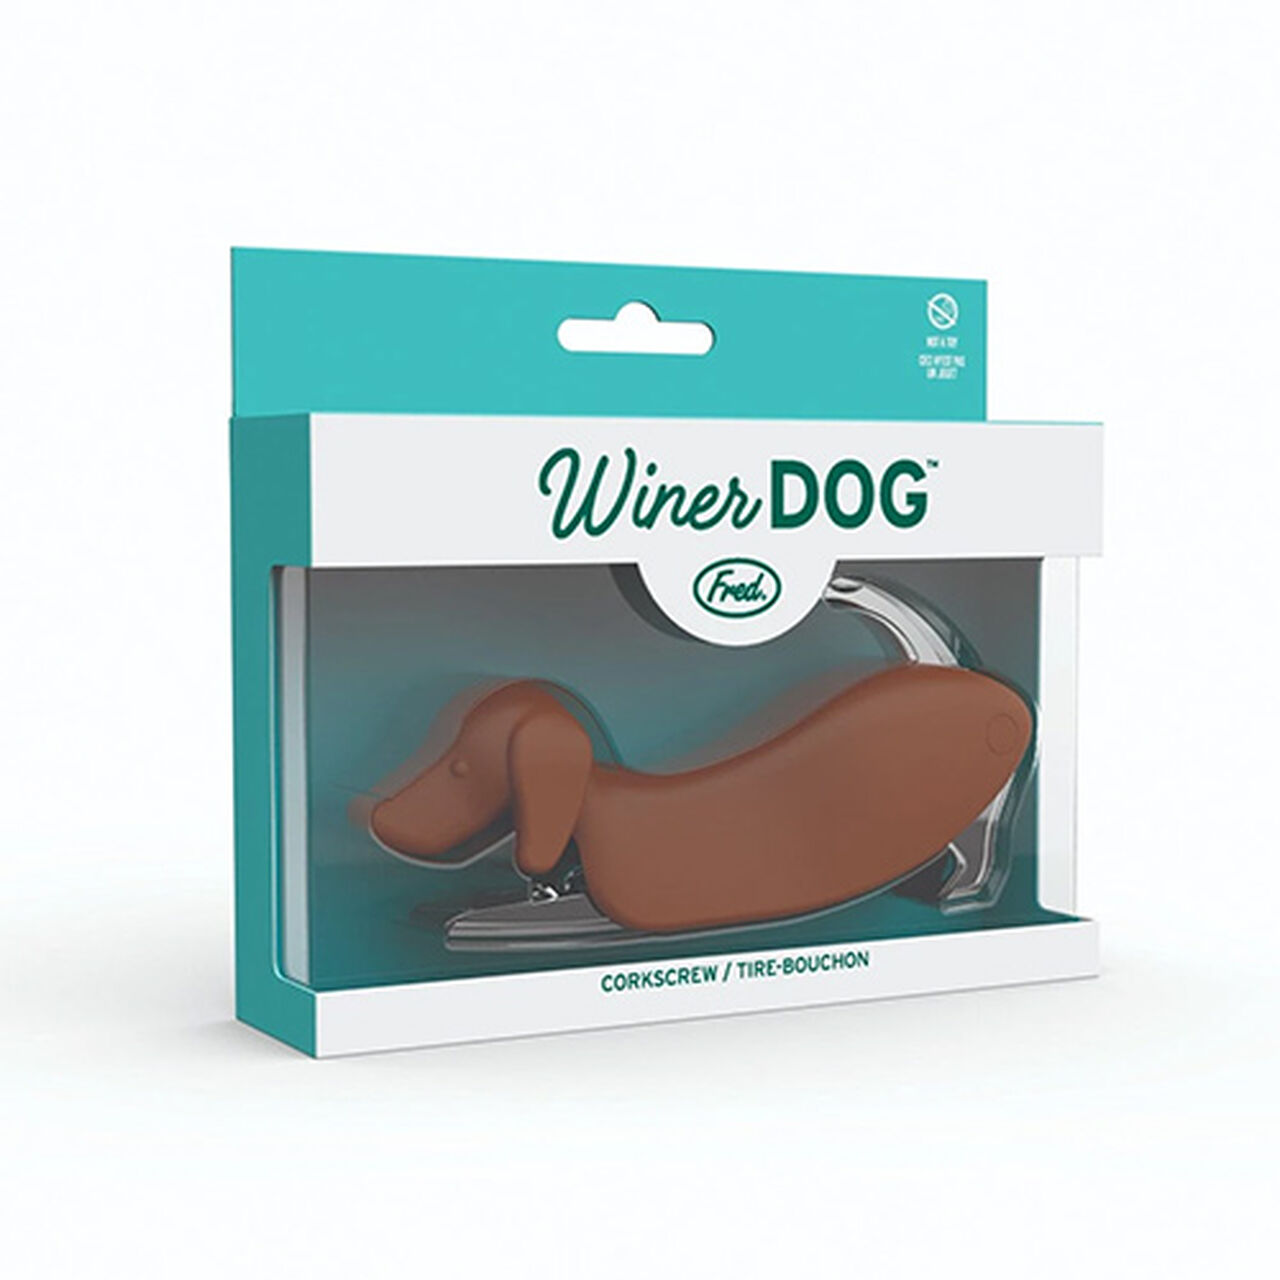 Genuine Fred Winer Dog - Dachshund Dog Shaped Corkscrew, , large image number 0